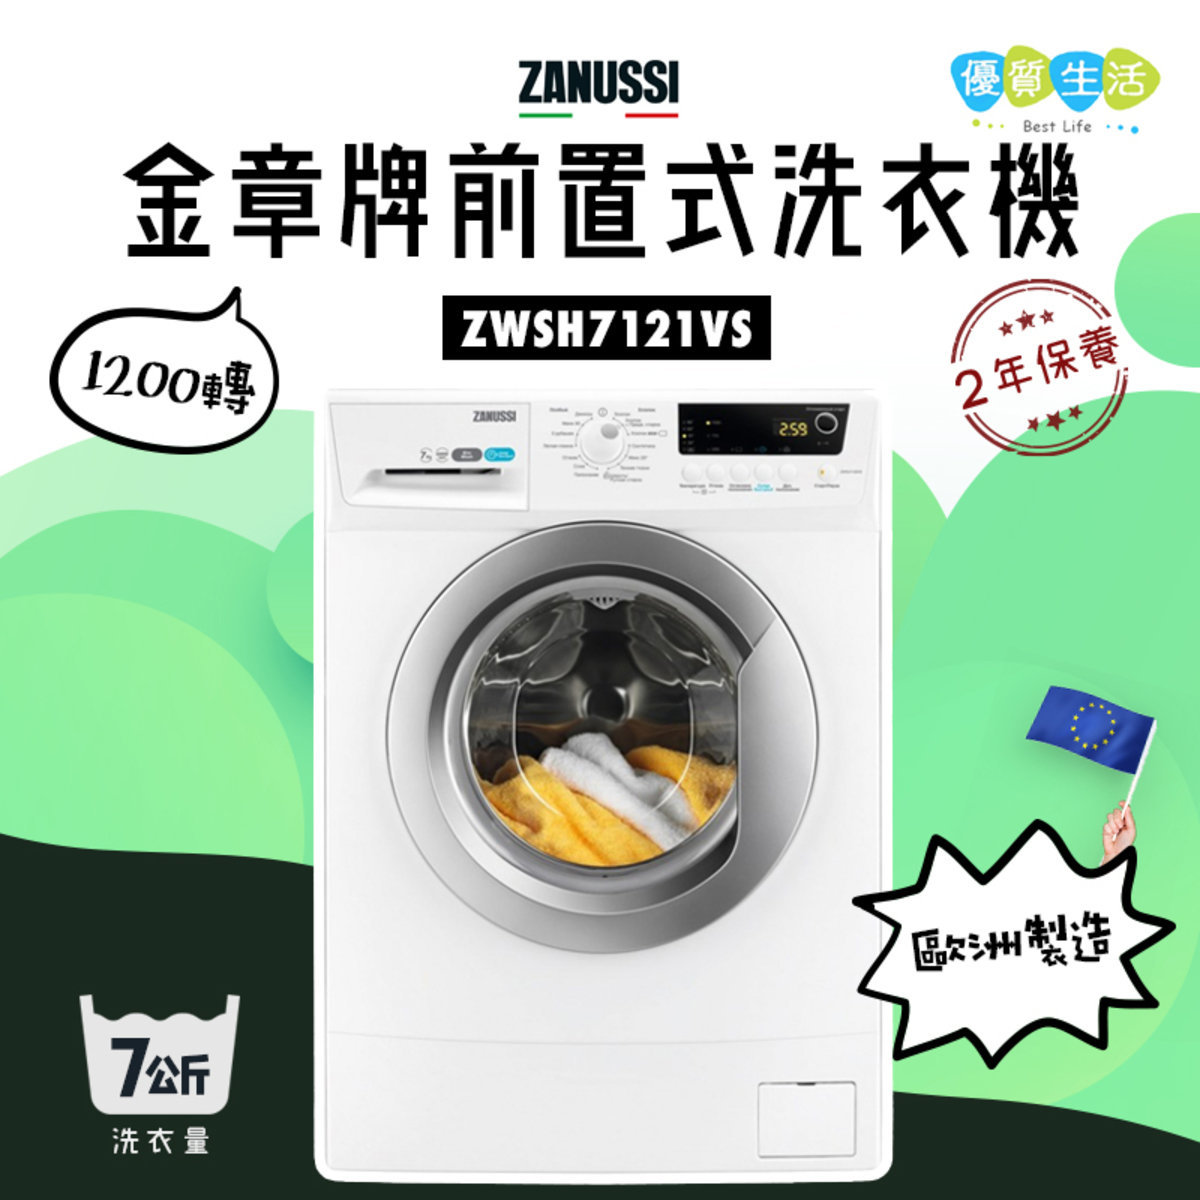 金章牌 Zwsh7121vs 7公斤前置式洗衣機 Hktvmall 香港最大網購平台